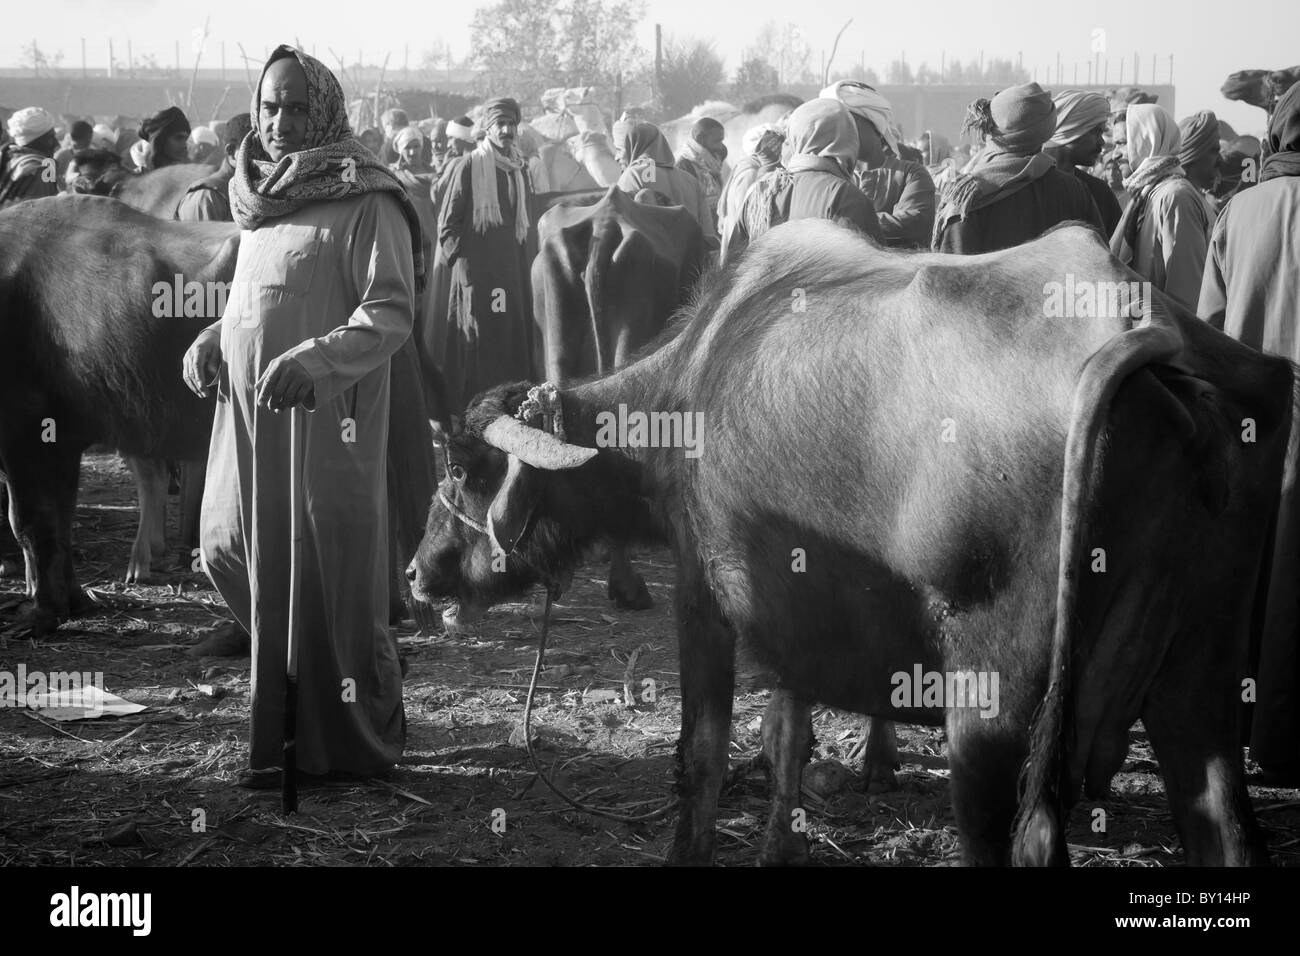 Immagine in bianco e nero di uomini al mercato di cammelli nei pressi di Luxor, Egitto Foto Stock